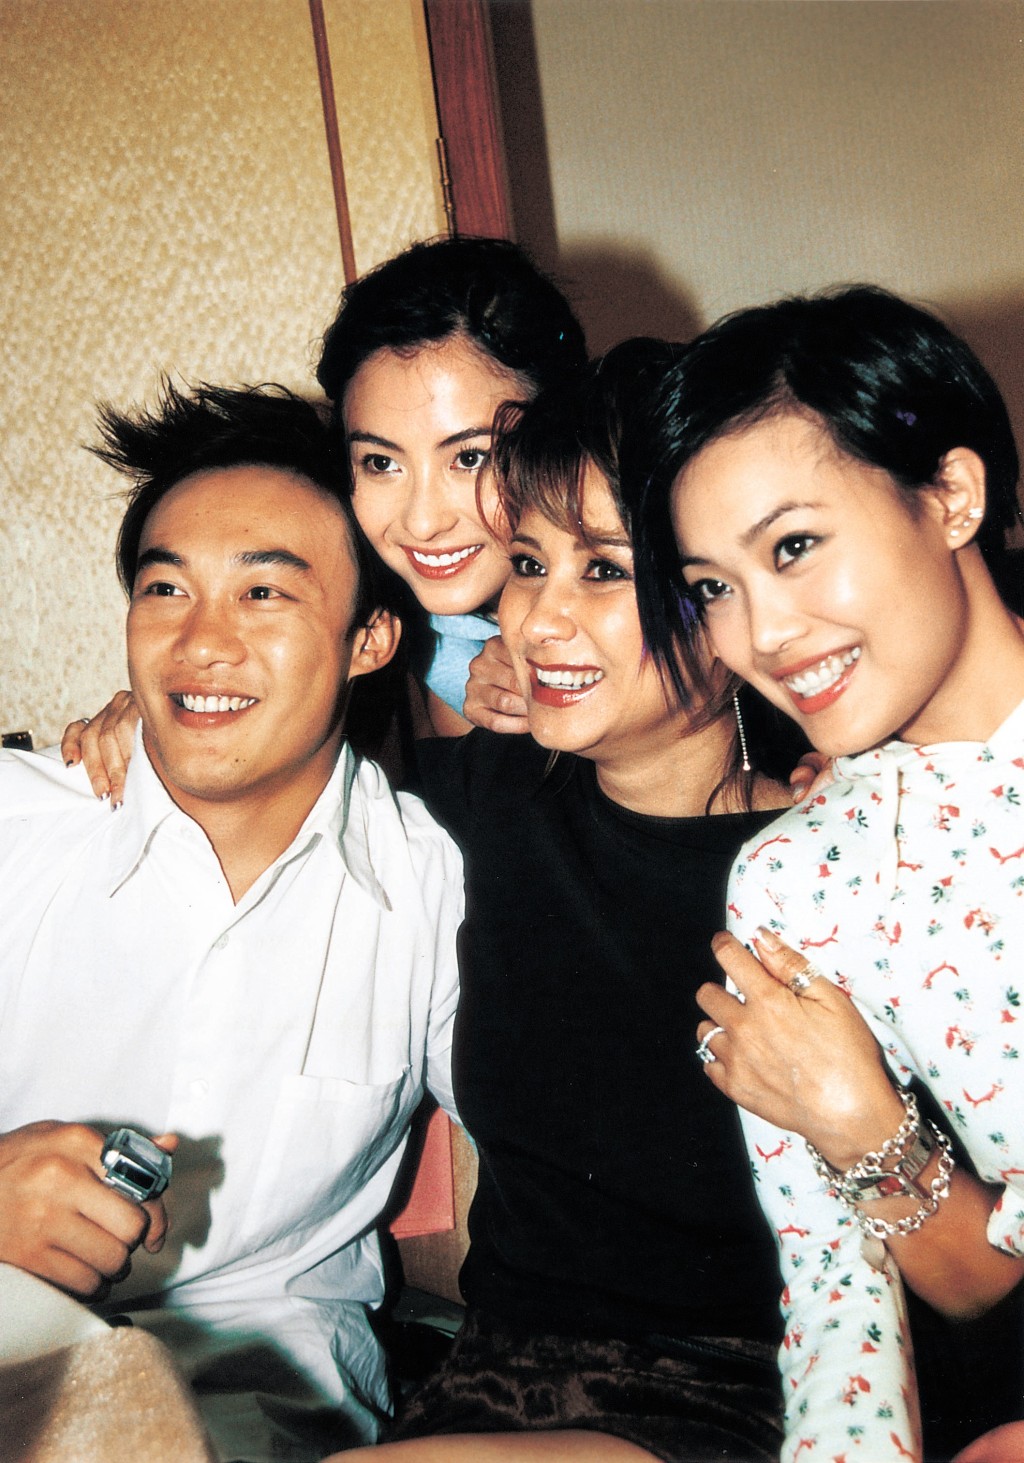 甄妮曾闹爆（左起）陈奕迅、张栢芝在头等机舱坐地玩啤牌嘈到拆天。